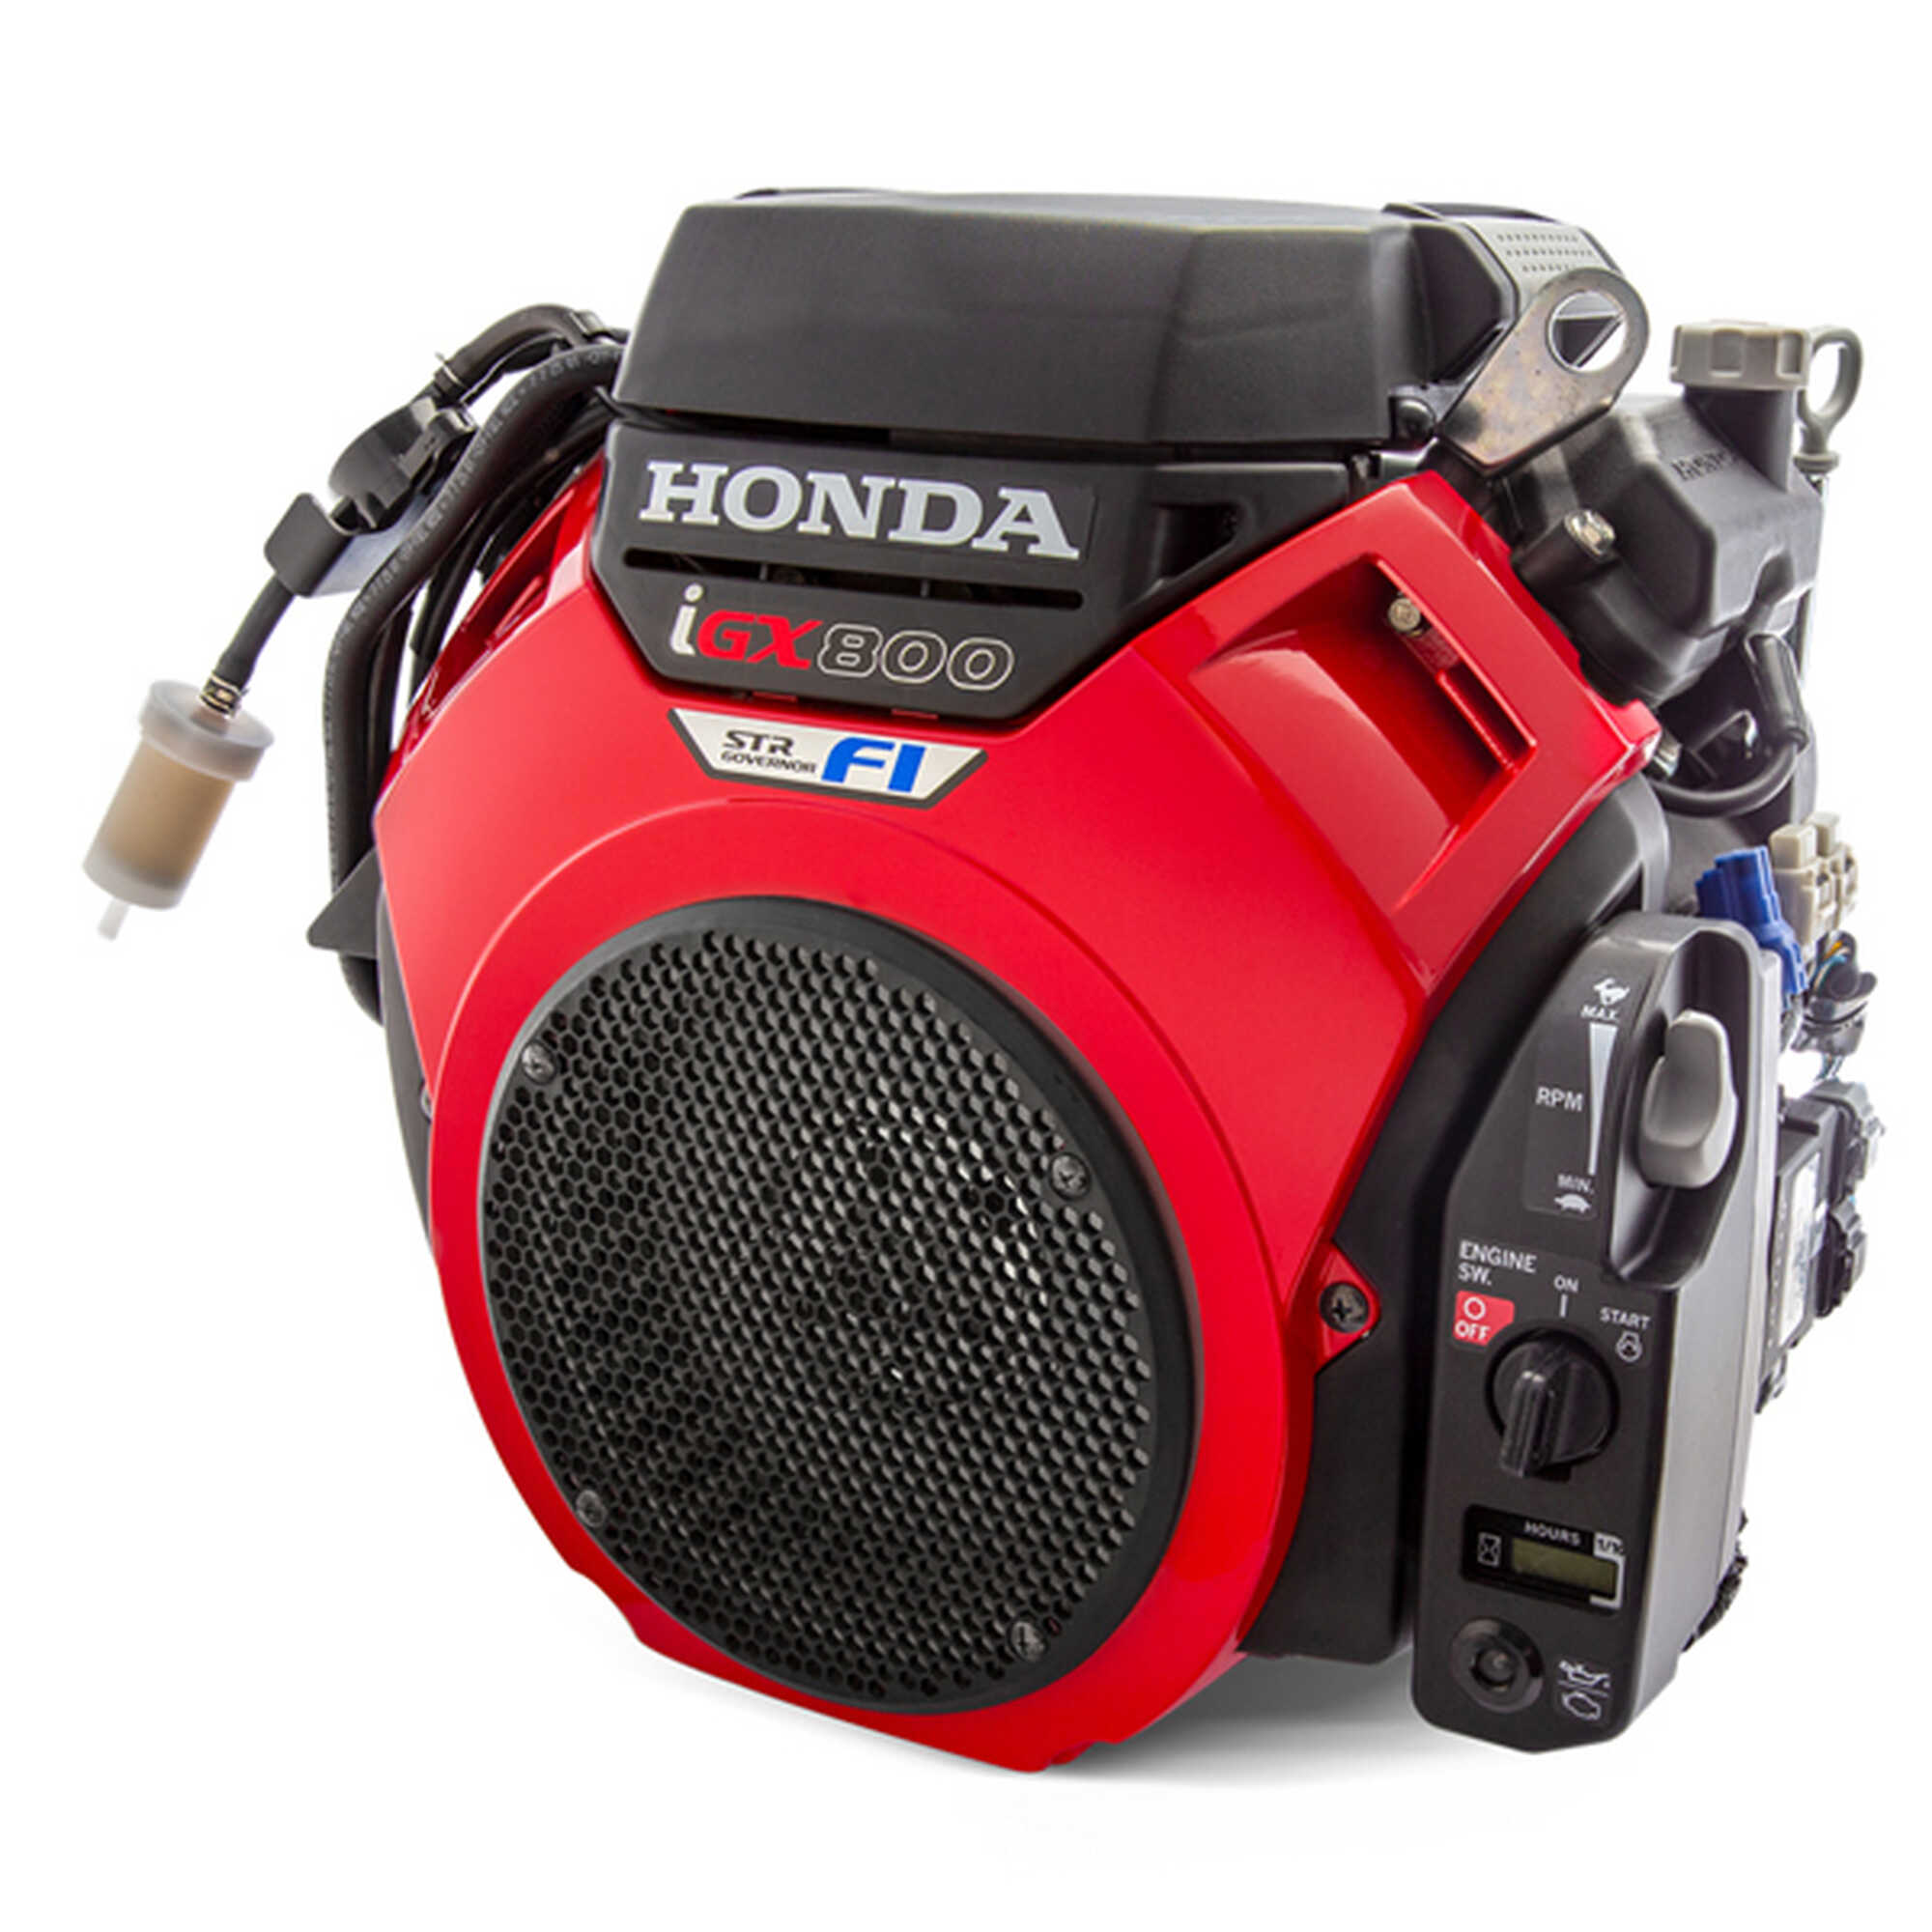 Модельный ряд Honda V-Twin пополняется двумя моделями с электронной системой впрыска топлива ...Надежность и интеллект